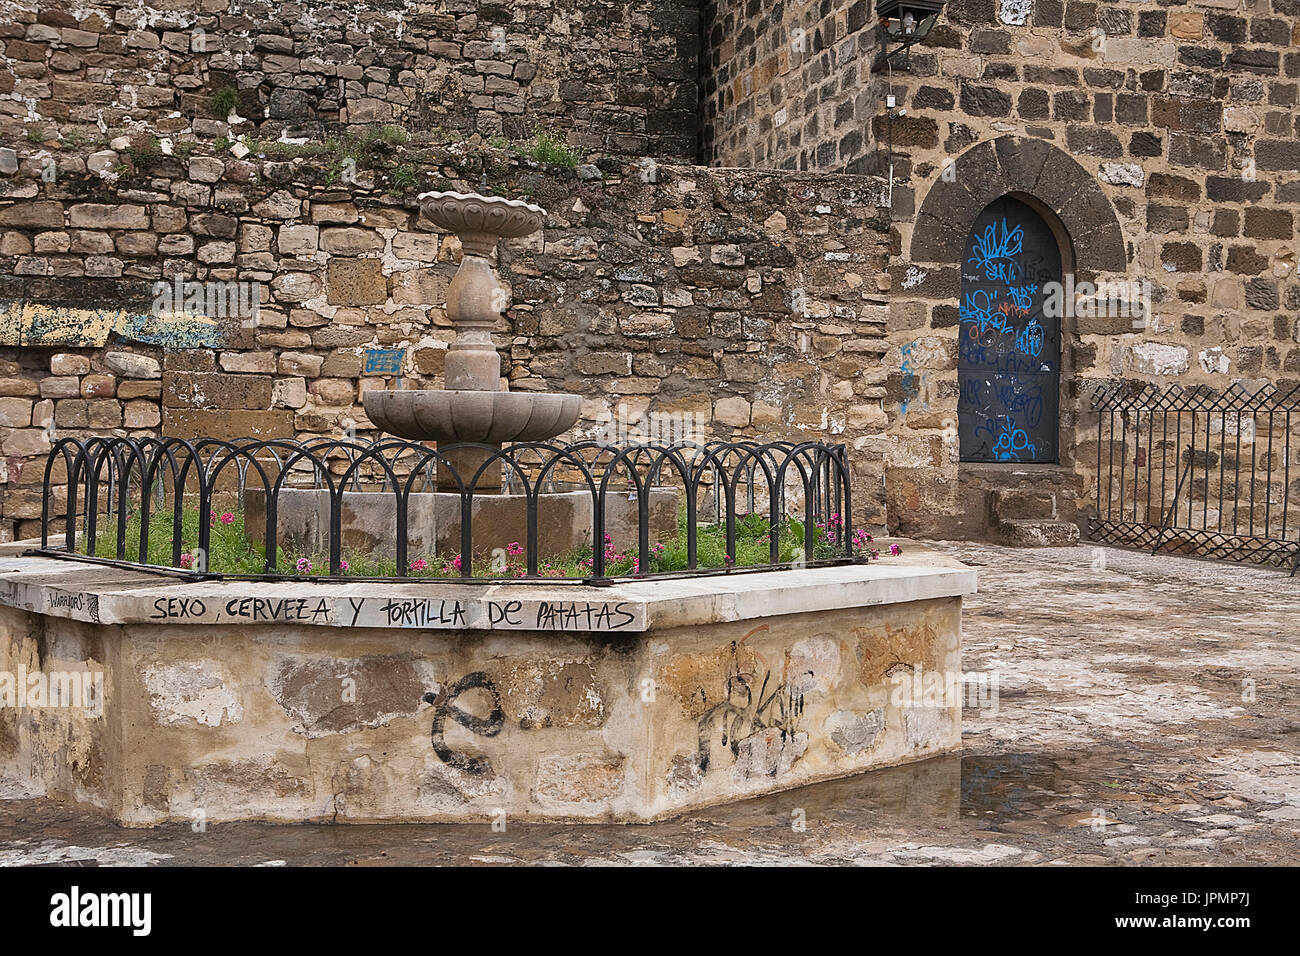 Sorgente in corrispondenza dei punti di vista di San Lorenzo adiacente alla chiesa di San Lorenzo, in stile rinascimentale, a Ubeda, Provincia di Jaen, Spagna Foto Stock